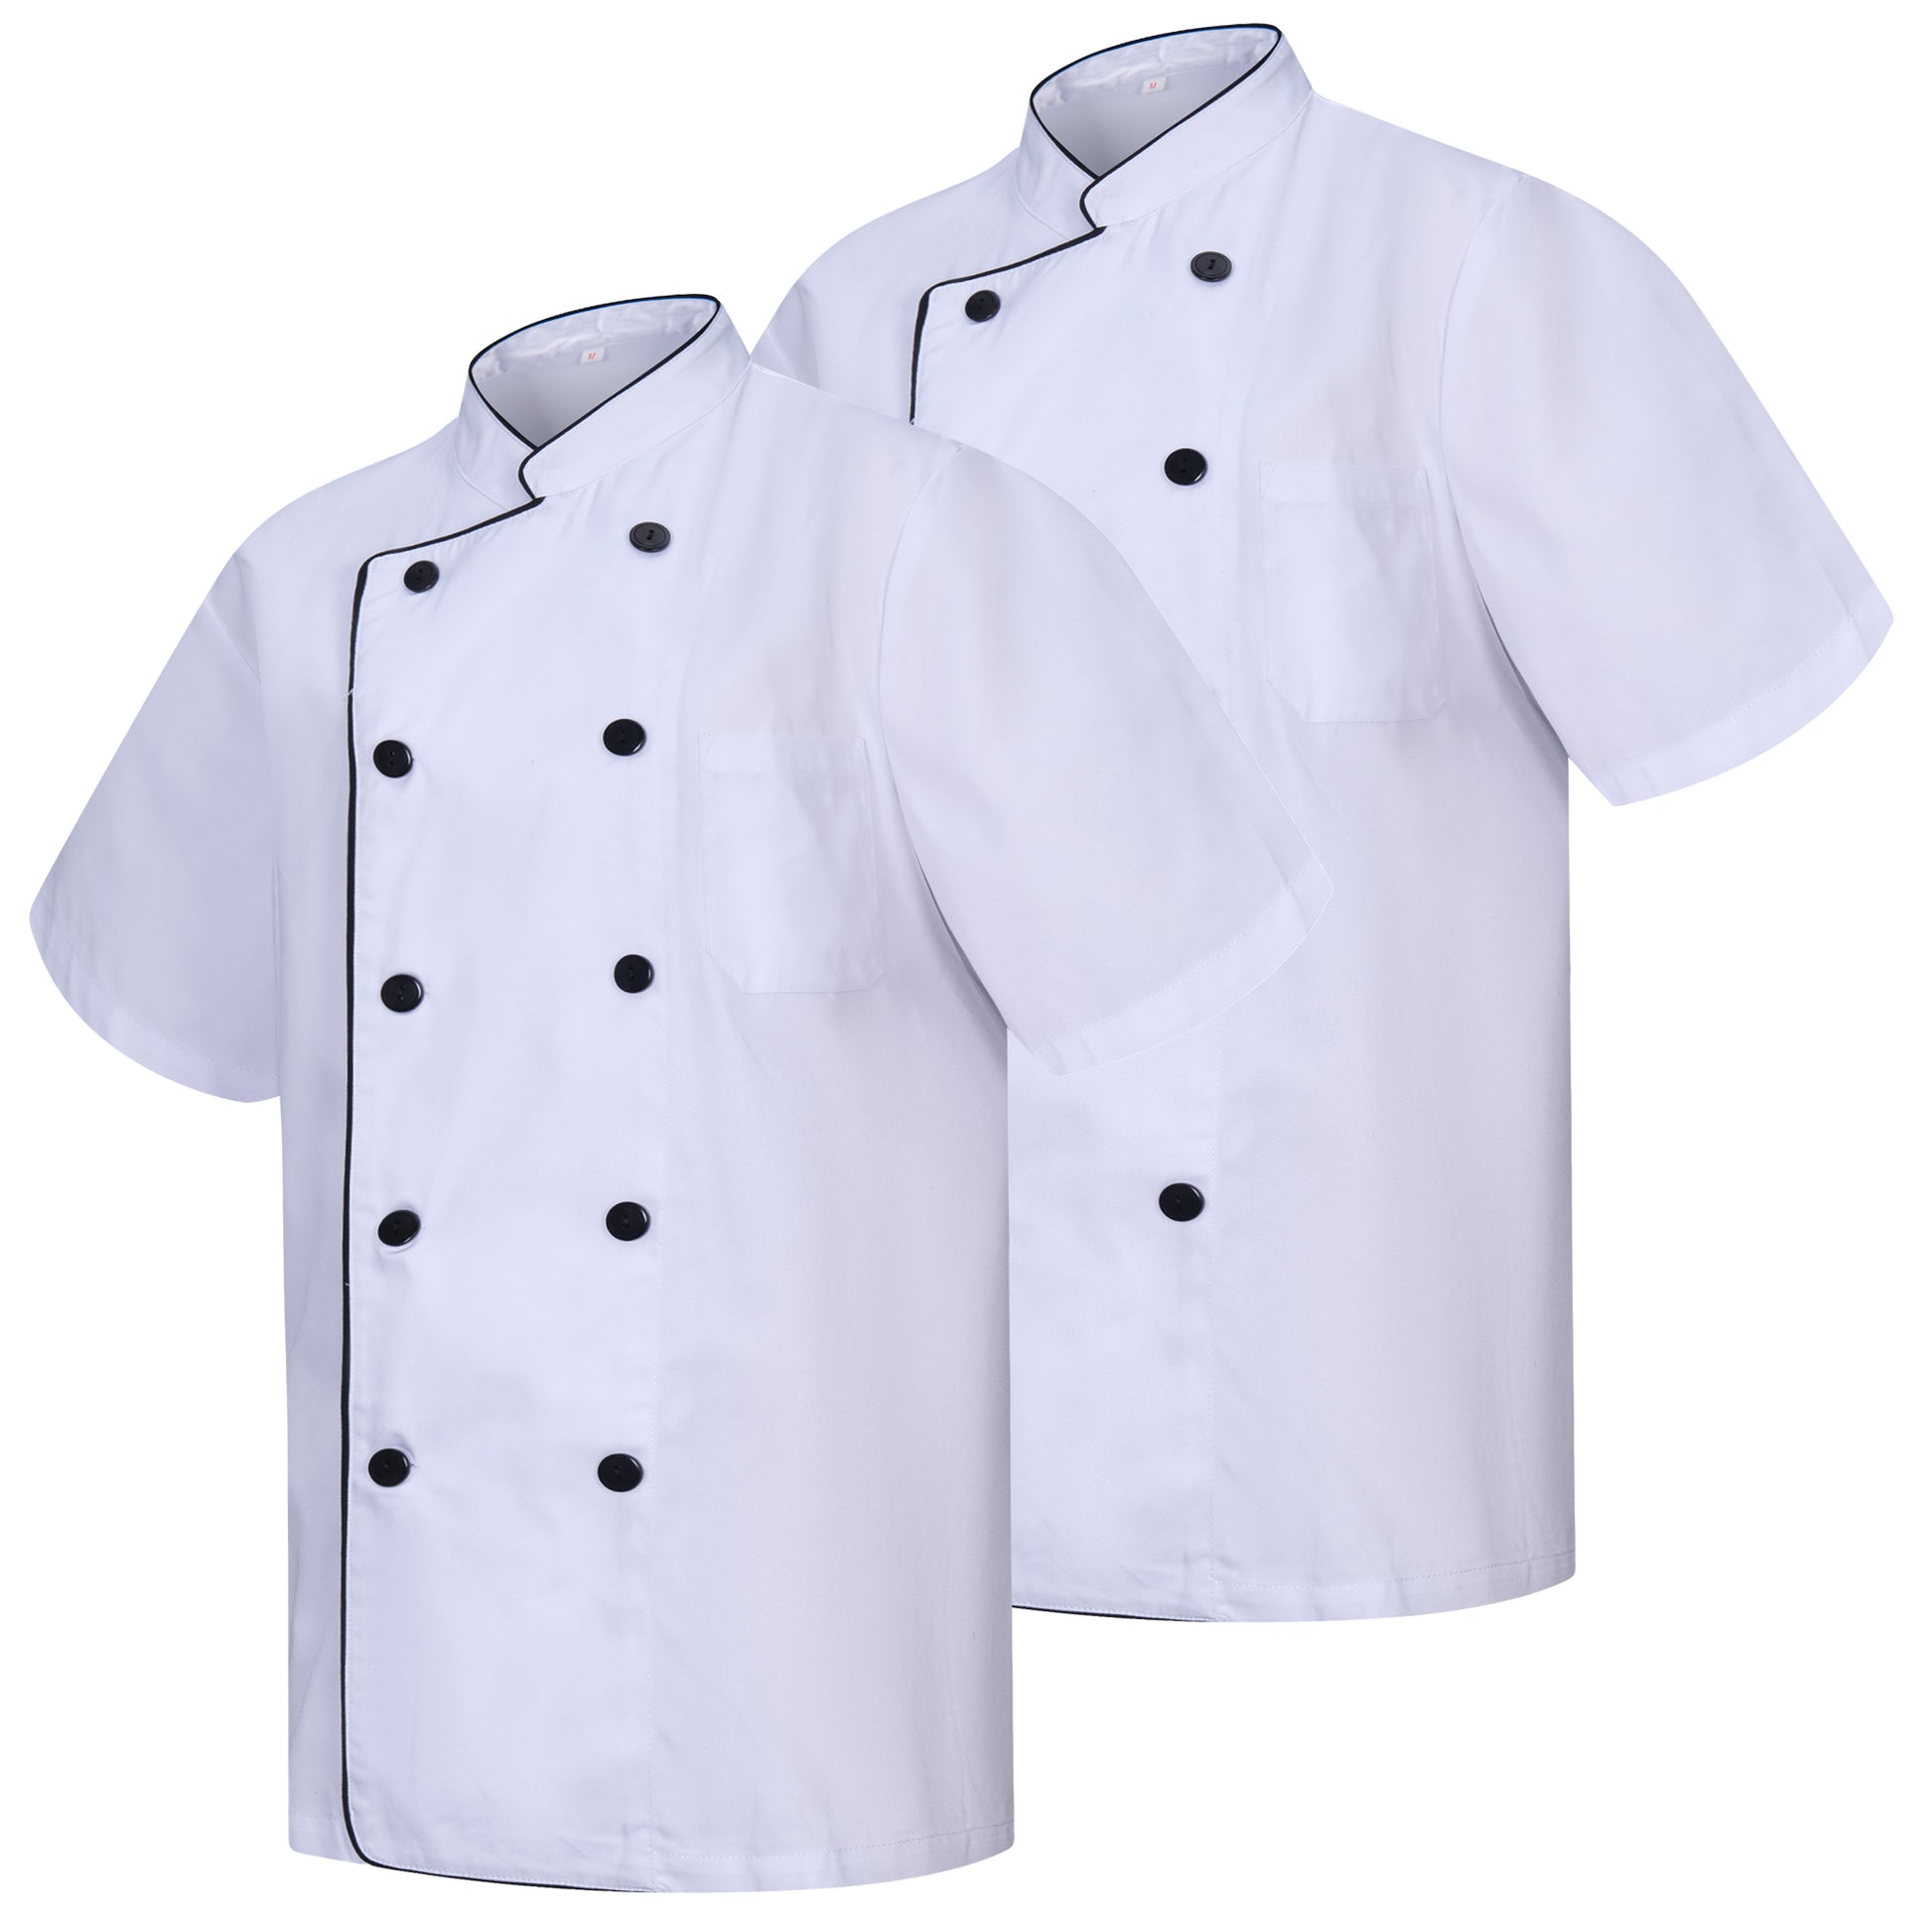 Pack 2 Unidades - Chaqueta Cocinero Hombre - Chaqueta de Chef Hombre - Uniforme Hosteleria - Ref.2-8421B